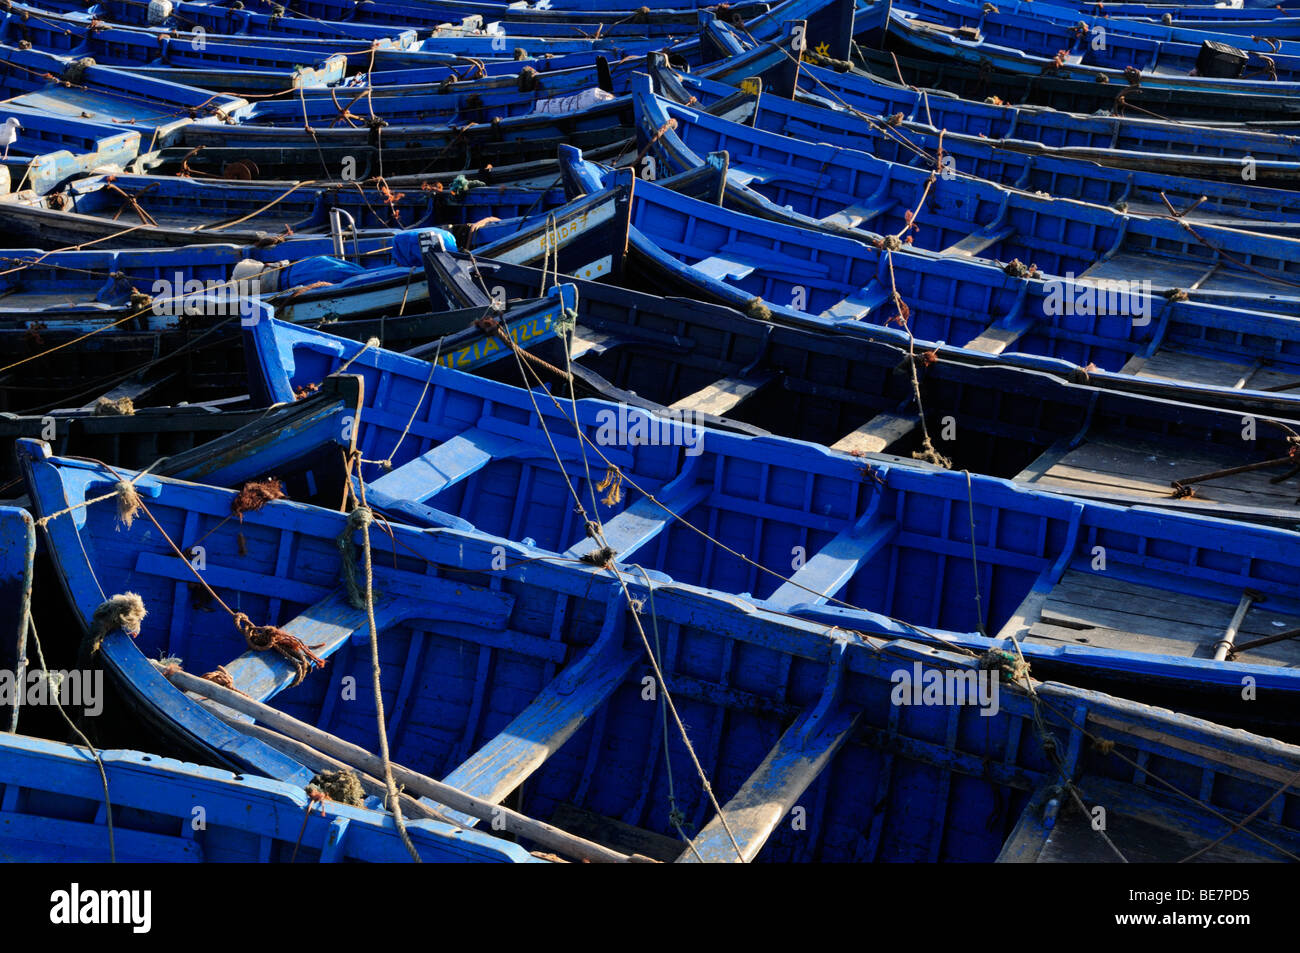 Bateaux bleu dans le port d'Essaouira, Maroc Banque D'Images